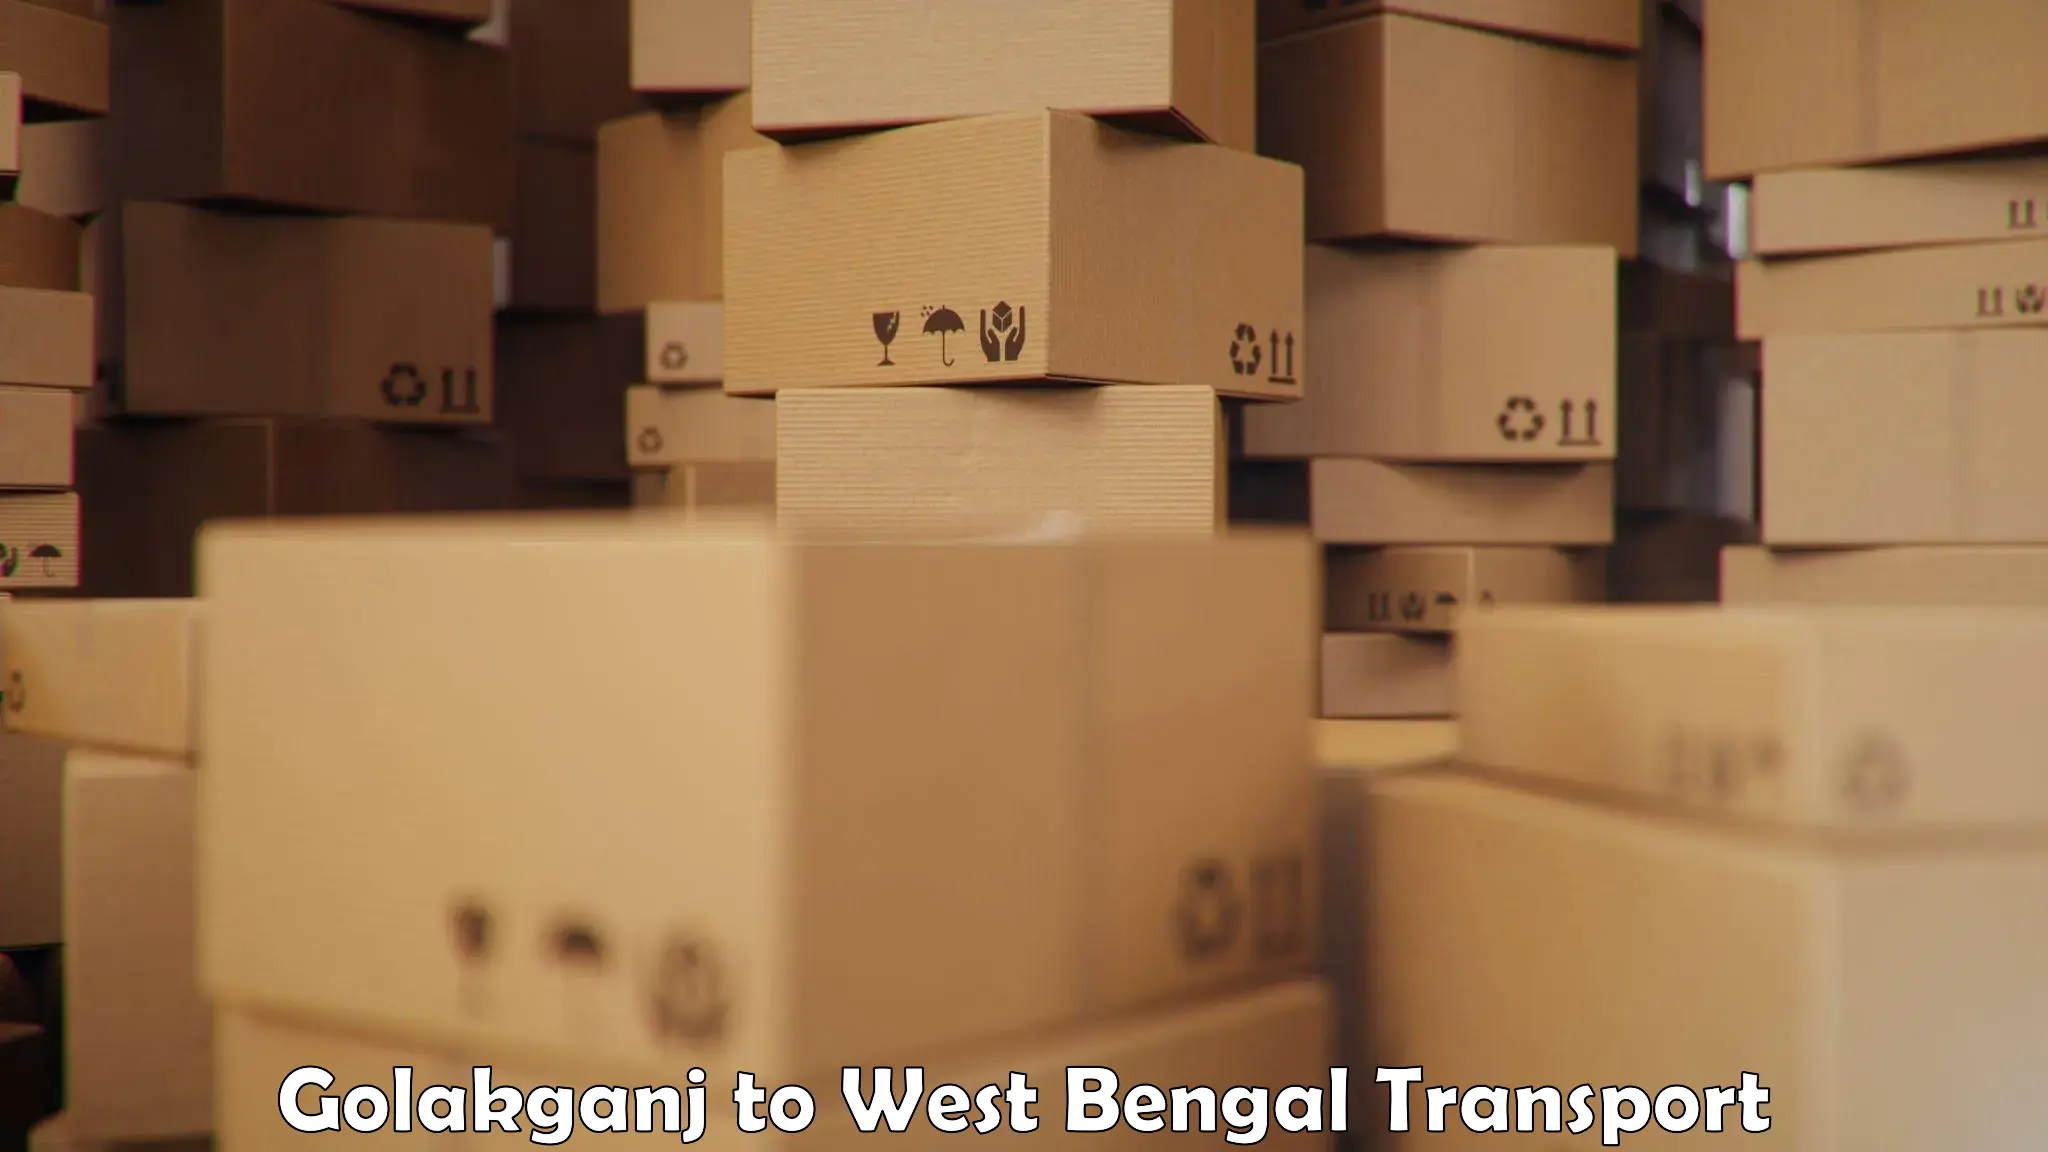 Shipping partner Golakganj to Panagarh